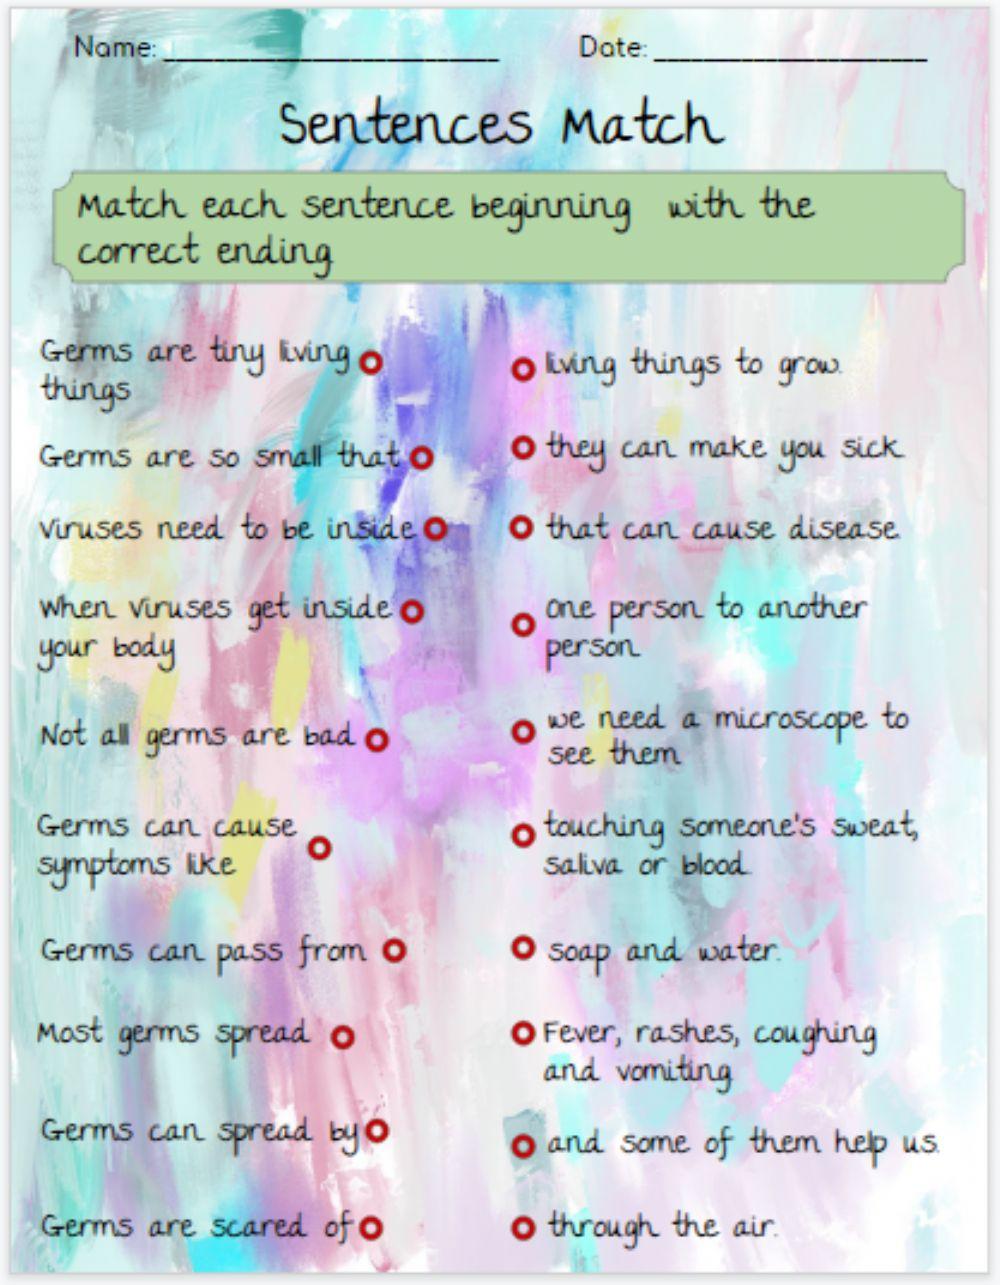 Sentence Match - Germs